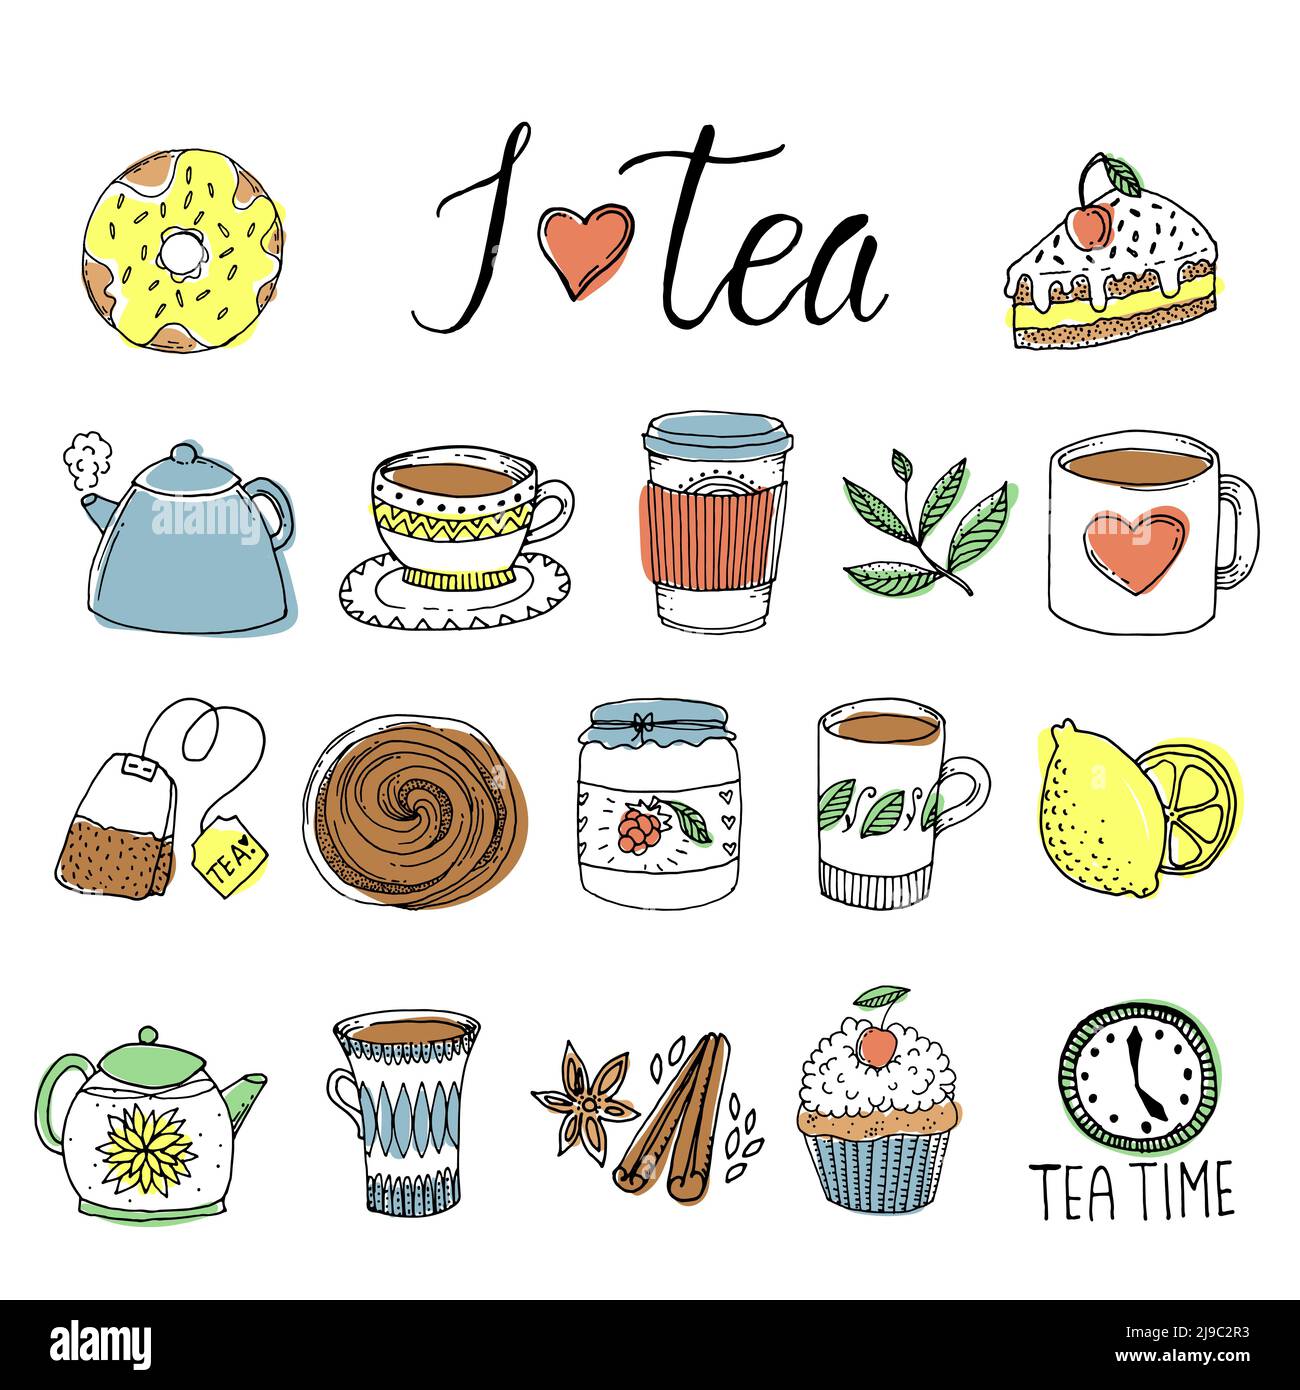 Handgezeichnete Teelemente mit grünen Blättern und Gewürzen Tassen und Töpfe Süßigkeiten isoliert Vektor-Illustration Stock Vektor